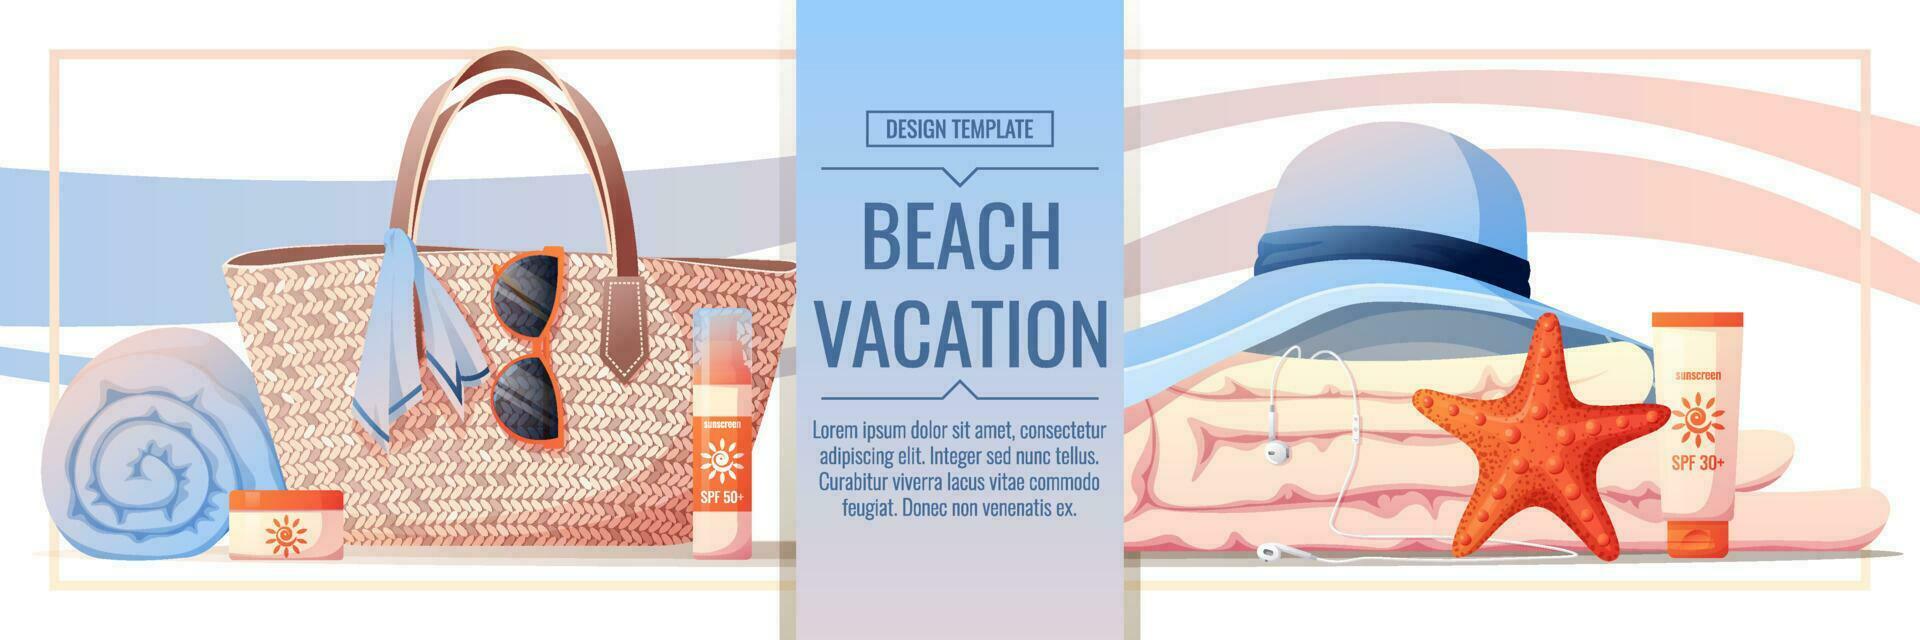 playa bandera con accesorios para relajante por el mar. playa bolsa, protector solar, anteojos, toalla, conchas webbaner, póster, volantes, publicidad. vector